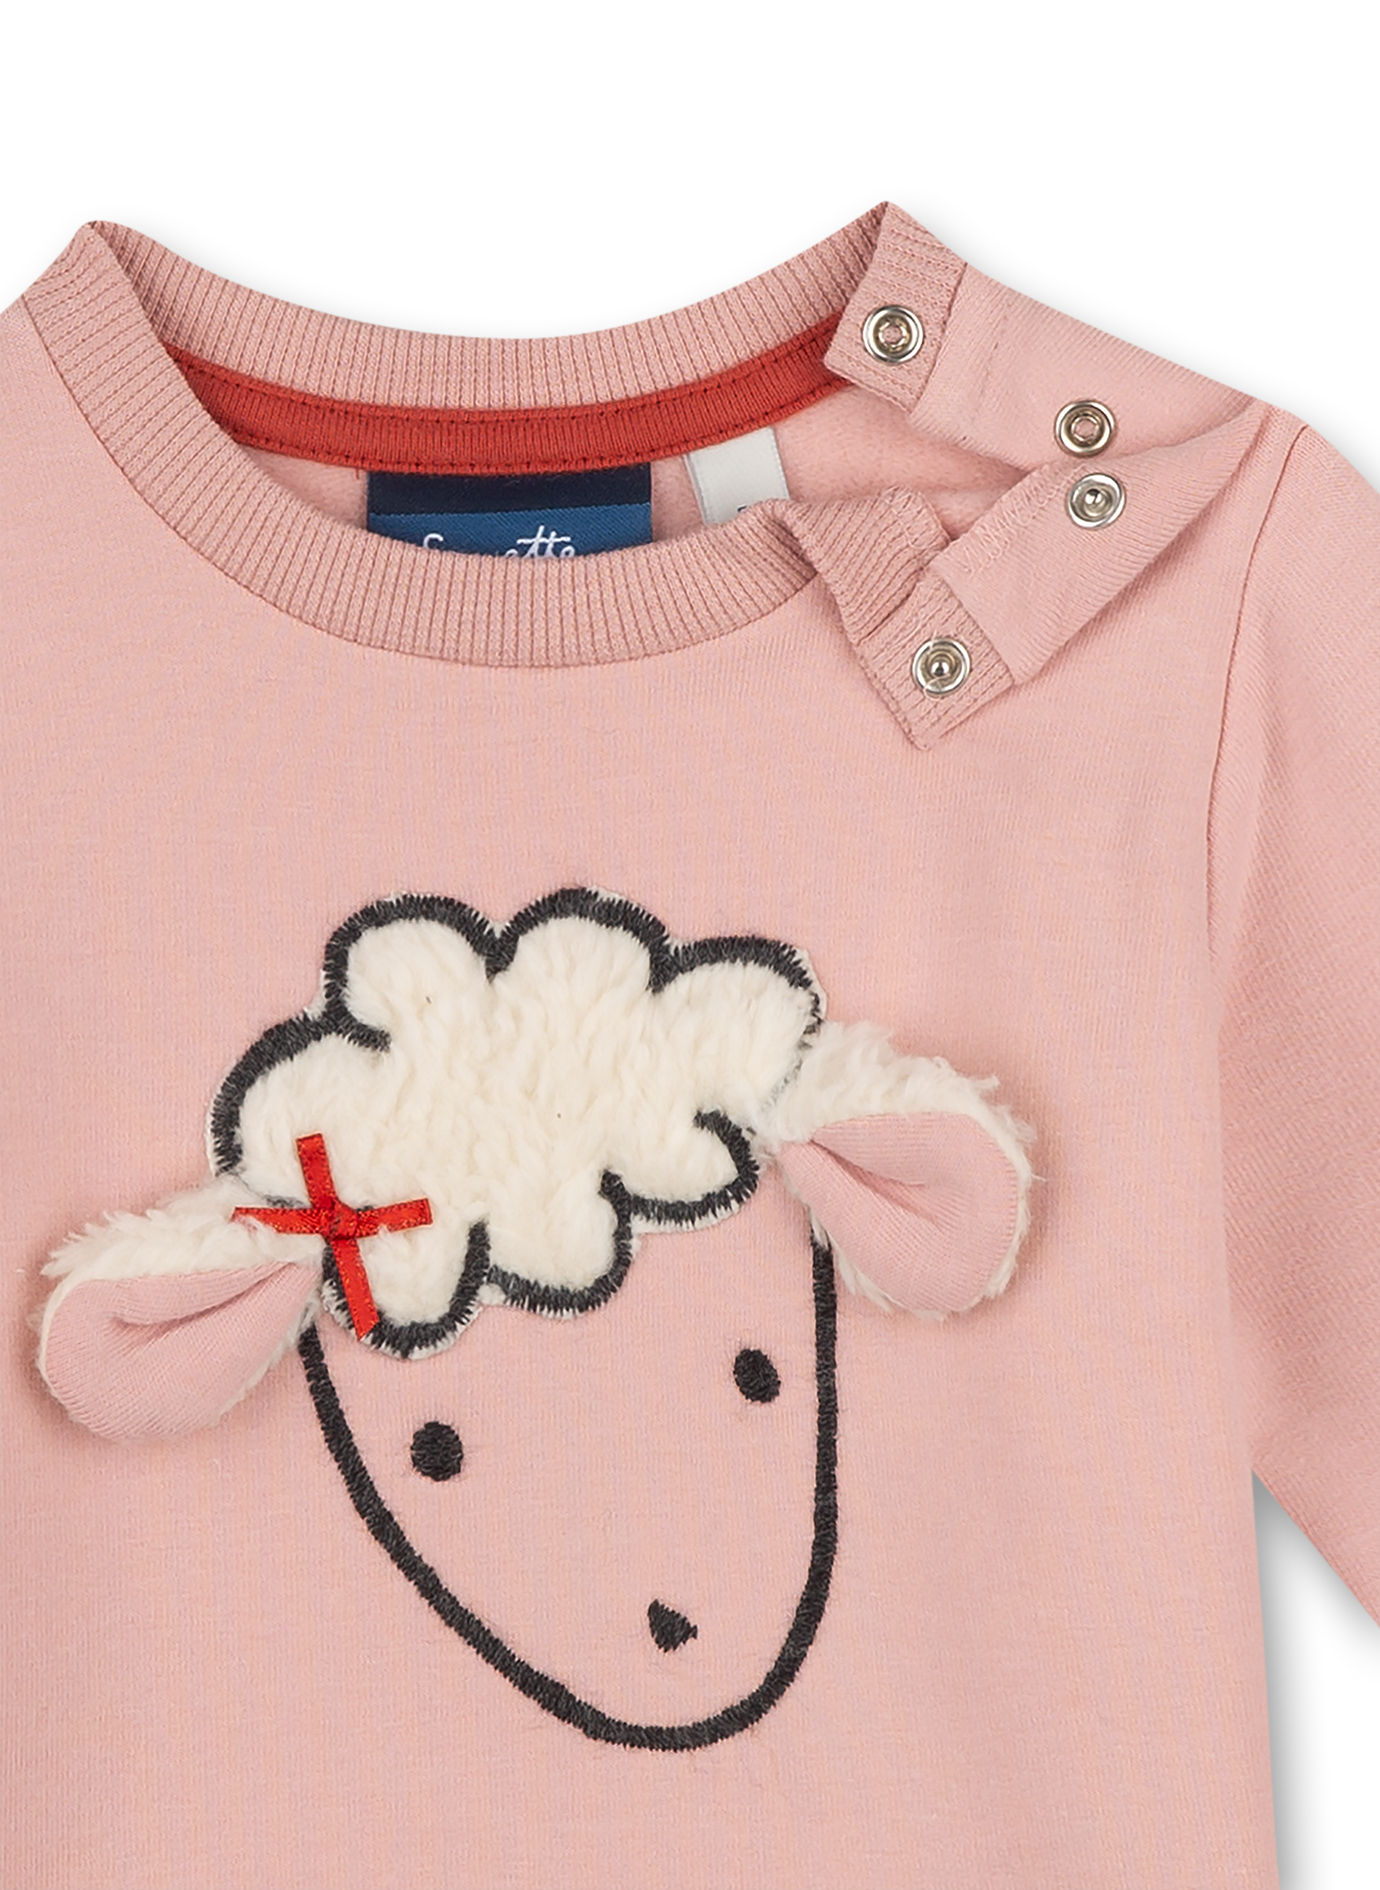 Mädchen-Sweatshirt Rosa Cheeky Lamb